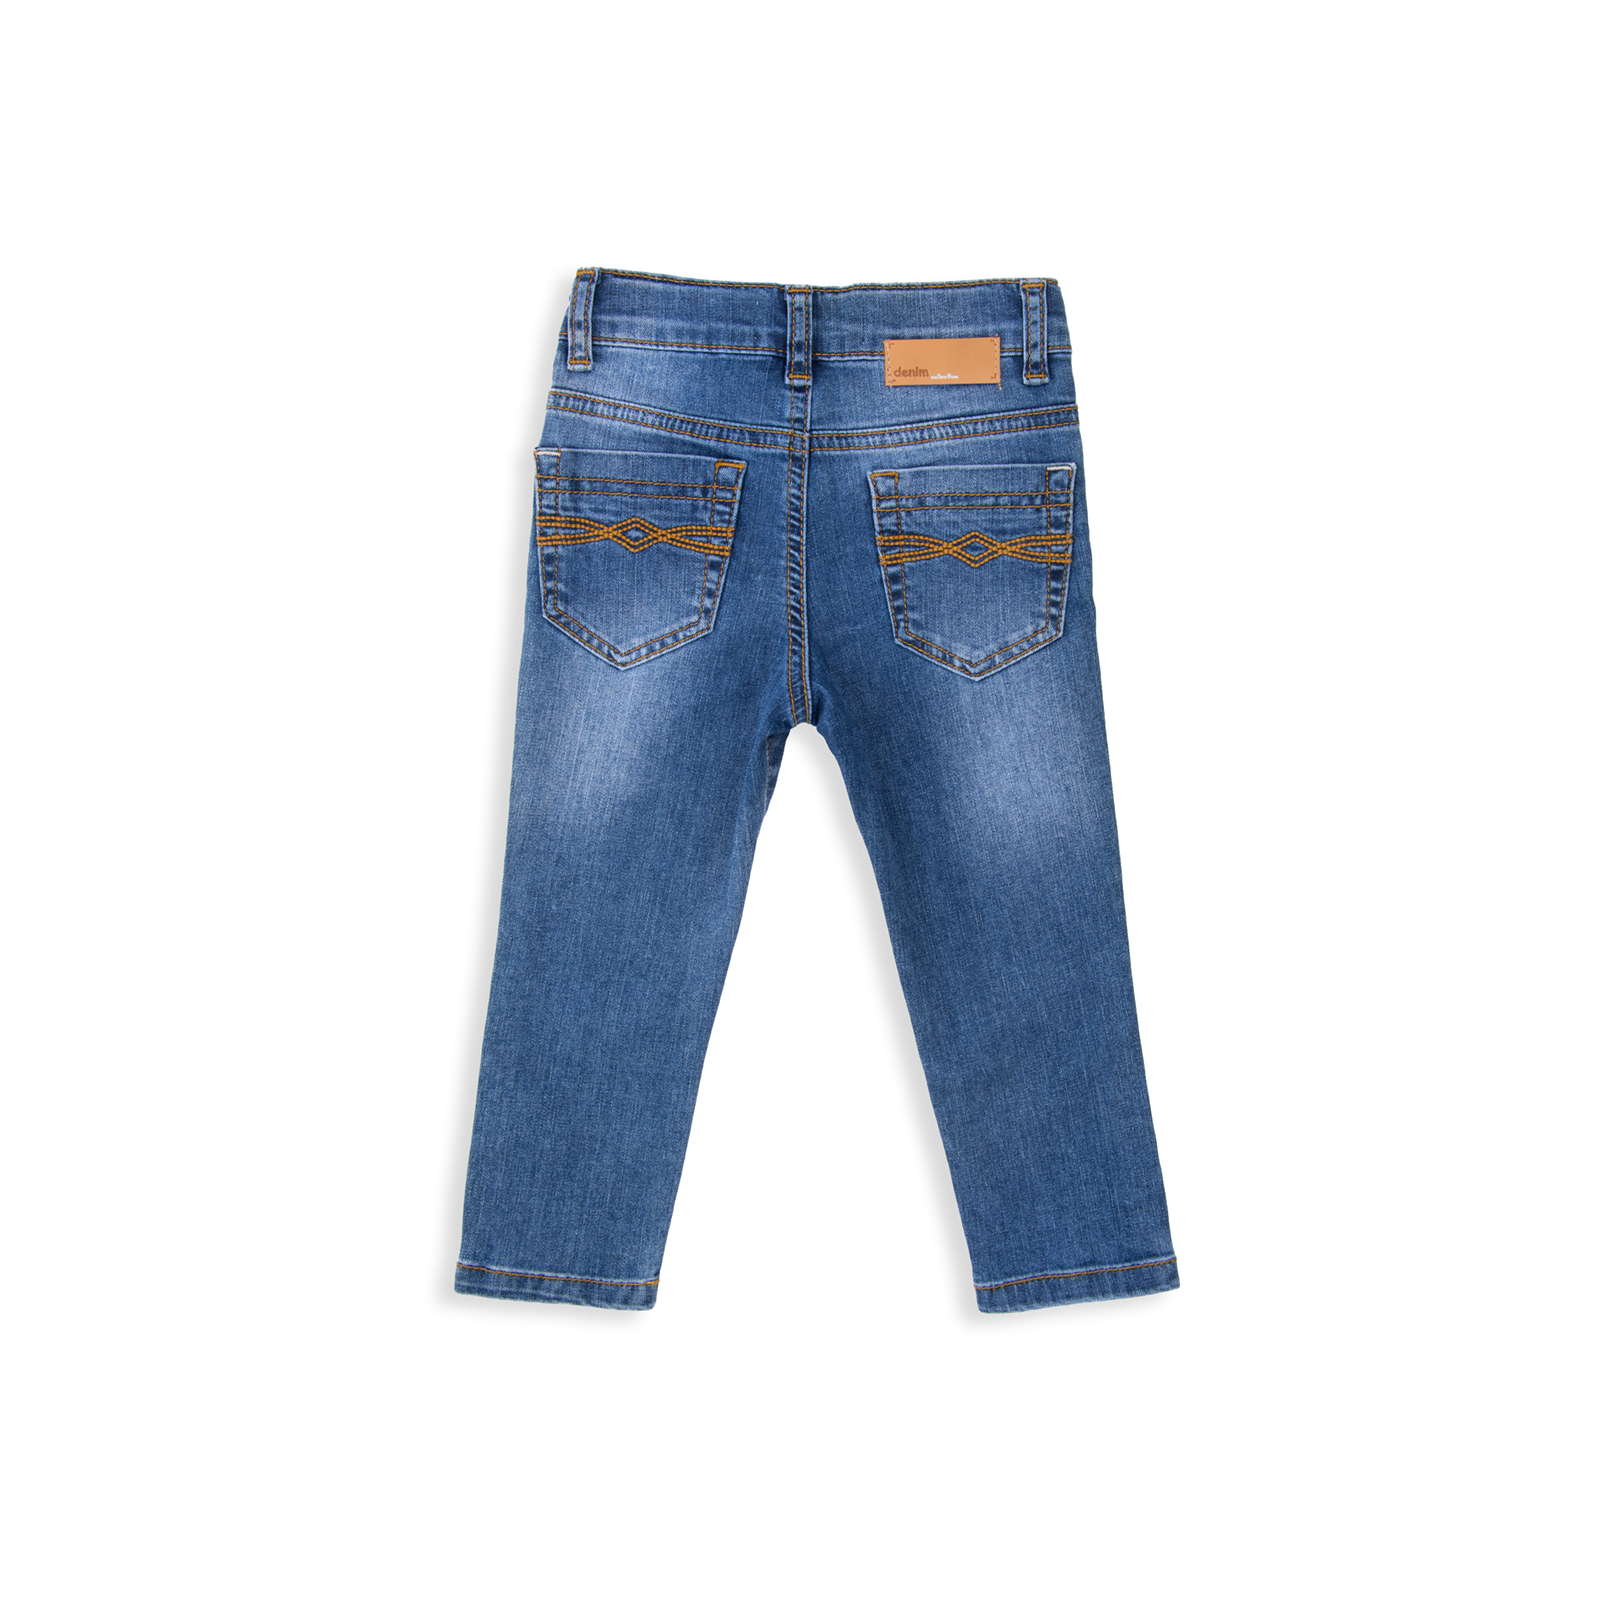 Джинсы Breeze синие (15YECPAN371-86B-jeans) изображение 2